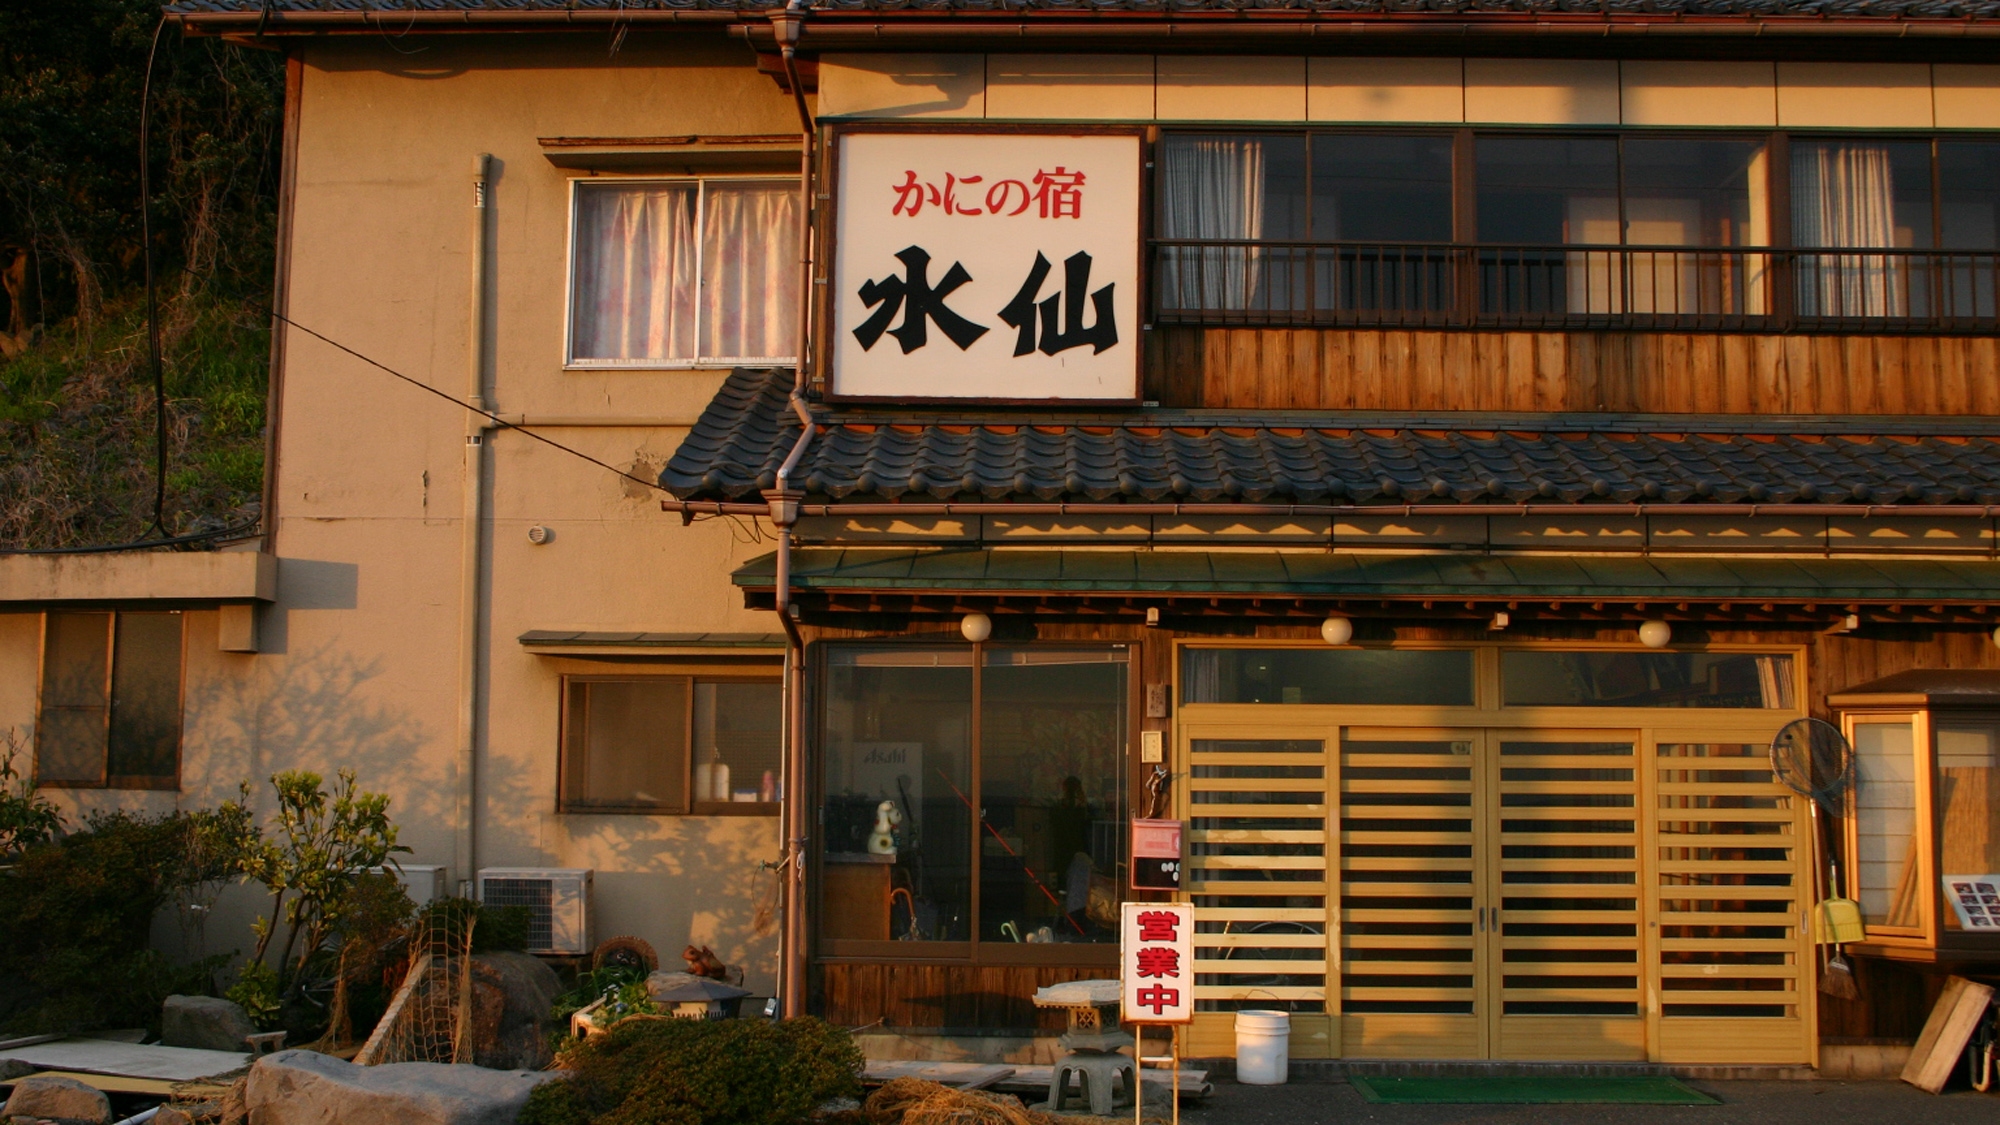 夕食で特産品のカニが食べられる、福井県のおすすめ宿を教えてください